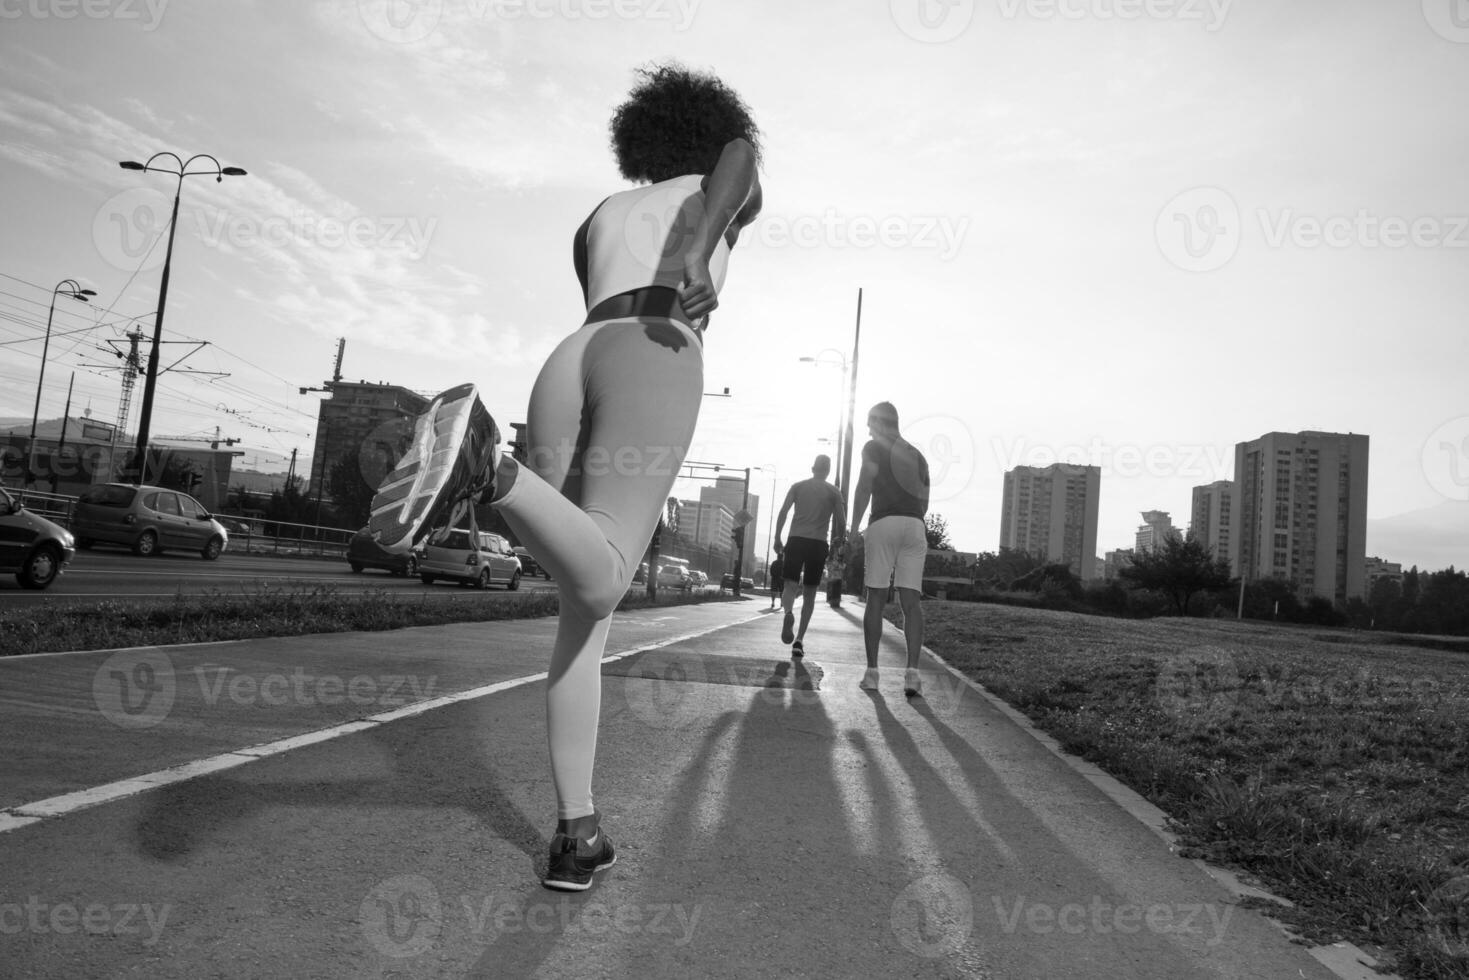 multiethnische gruppe von menschen beim joggen foto